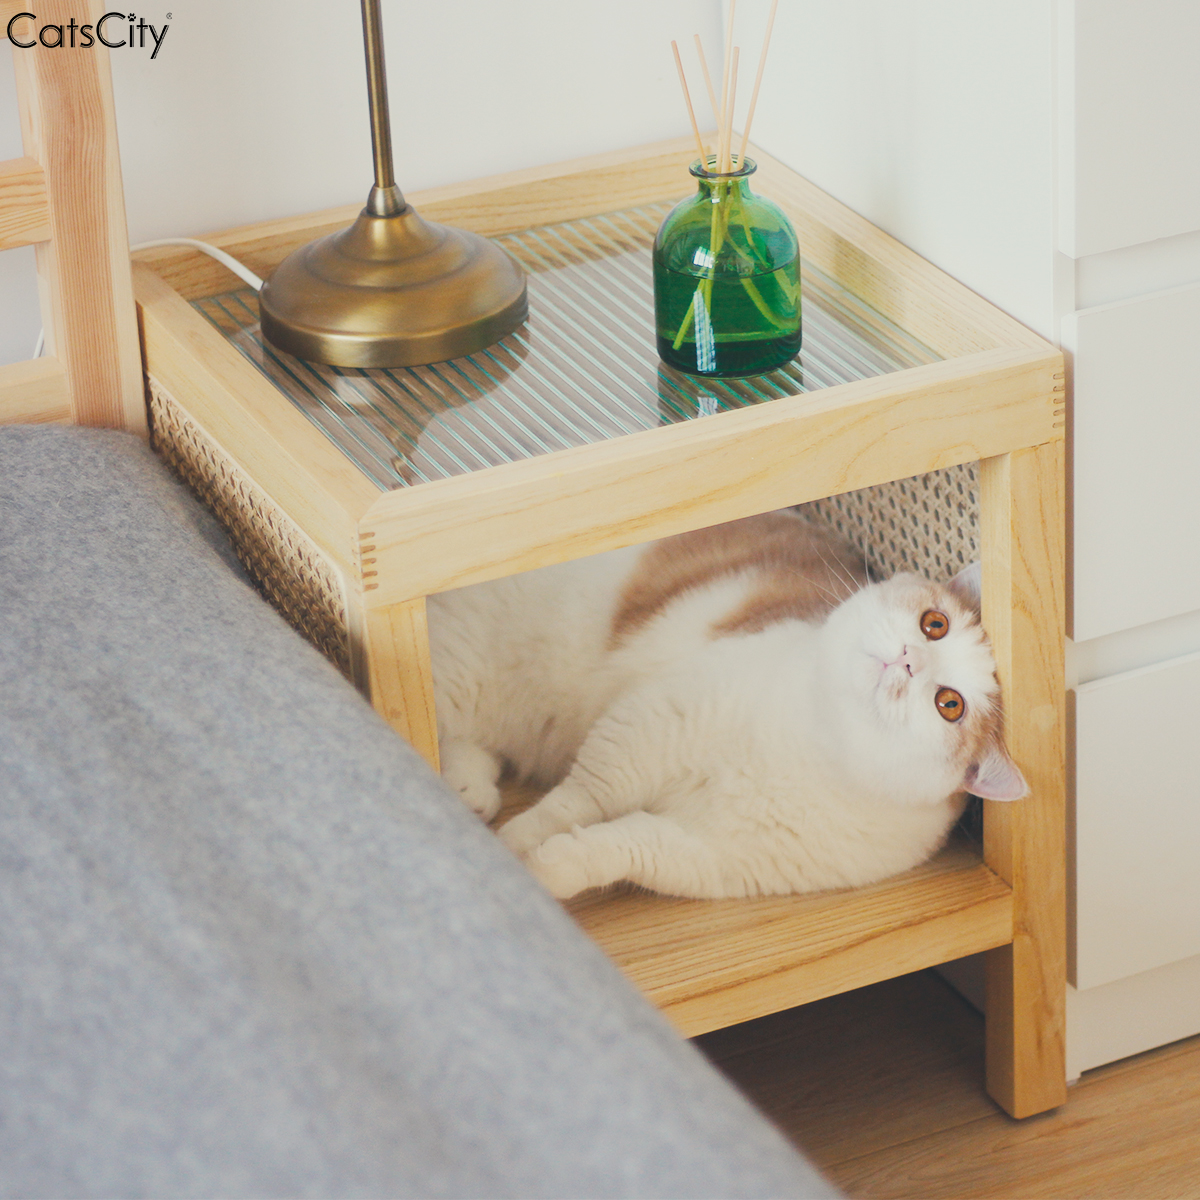 CatsCity原创设计北欧ins风藤编茶几猫窝人猫共用长虹玻璃床头柜